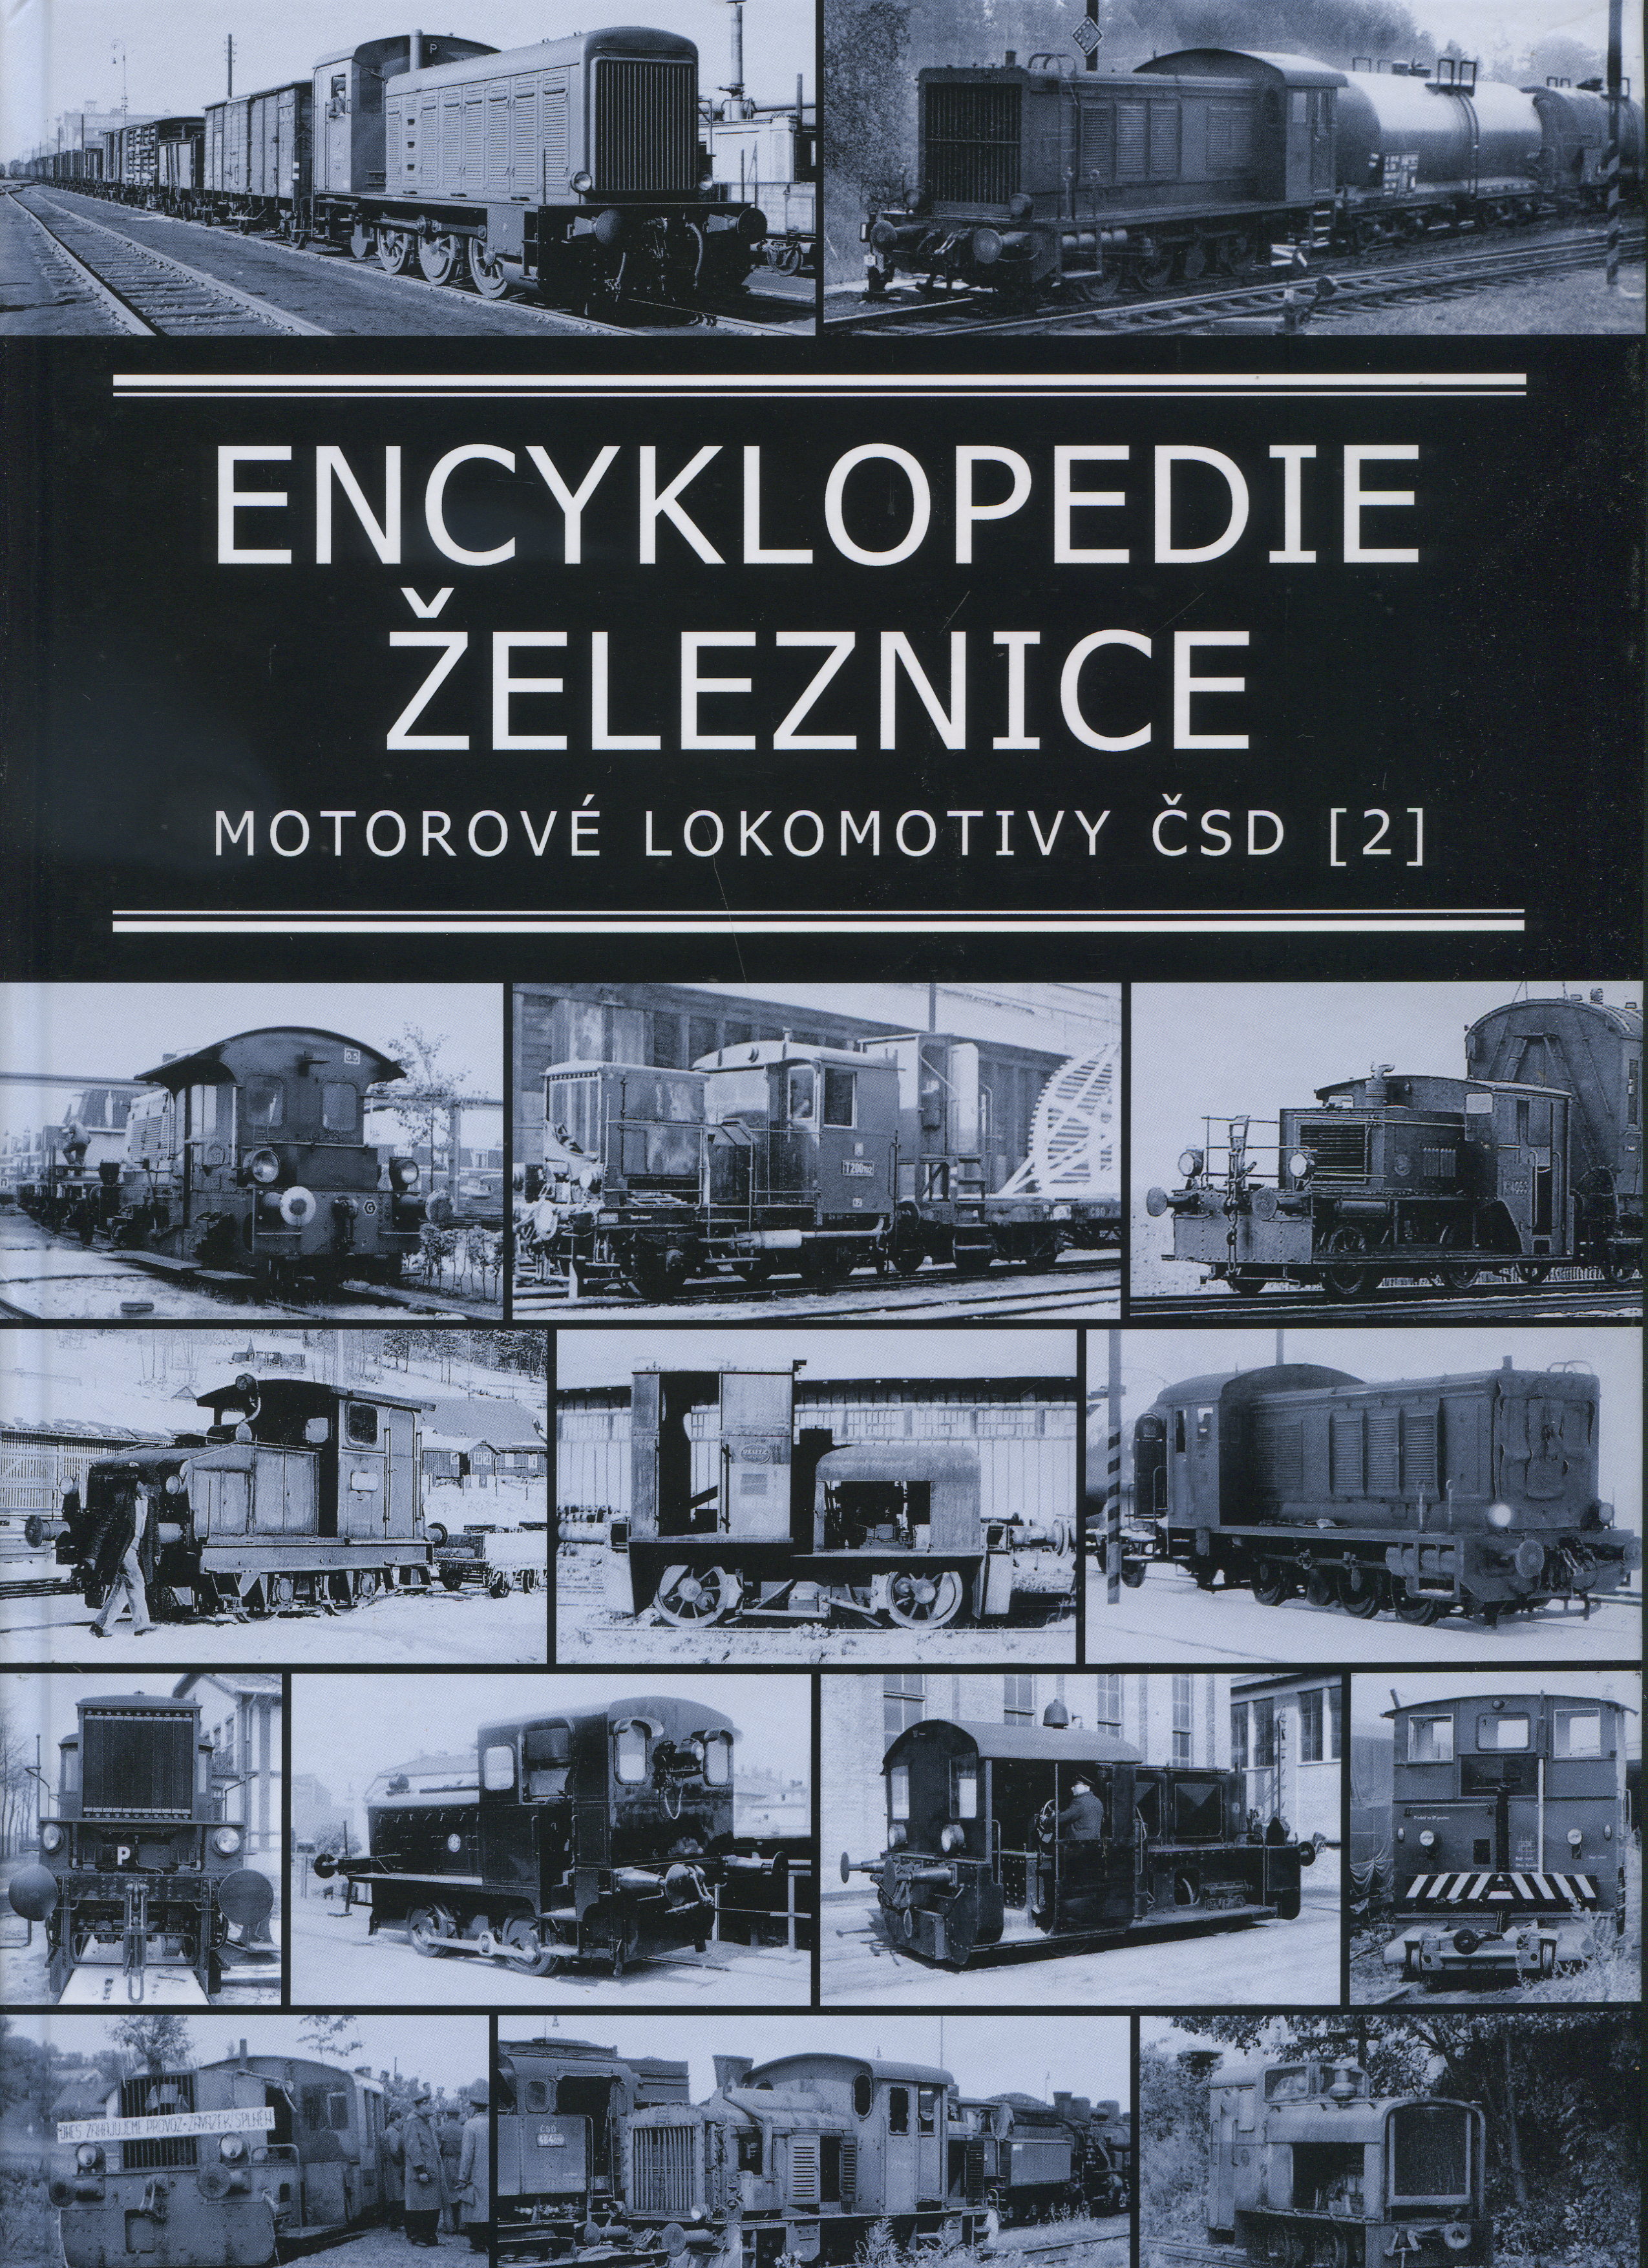 Encyklopedie železnice - Motorové lokomotivy ČSD 2.